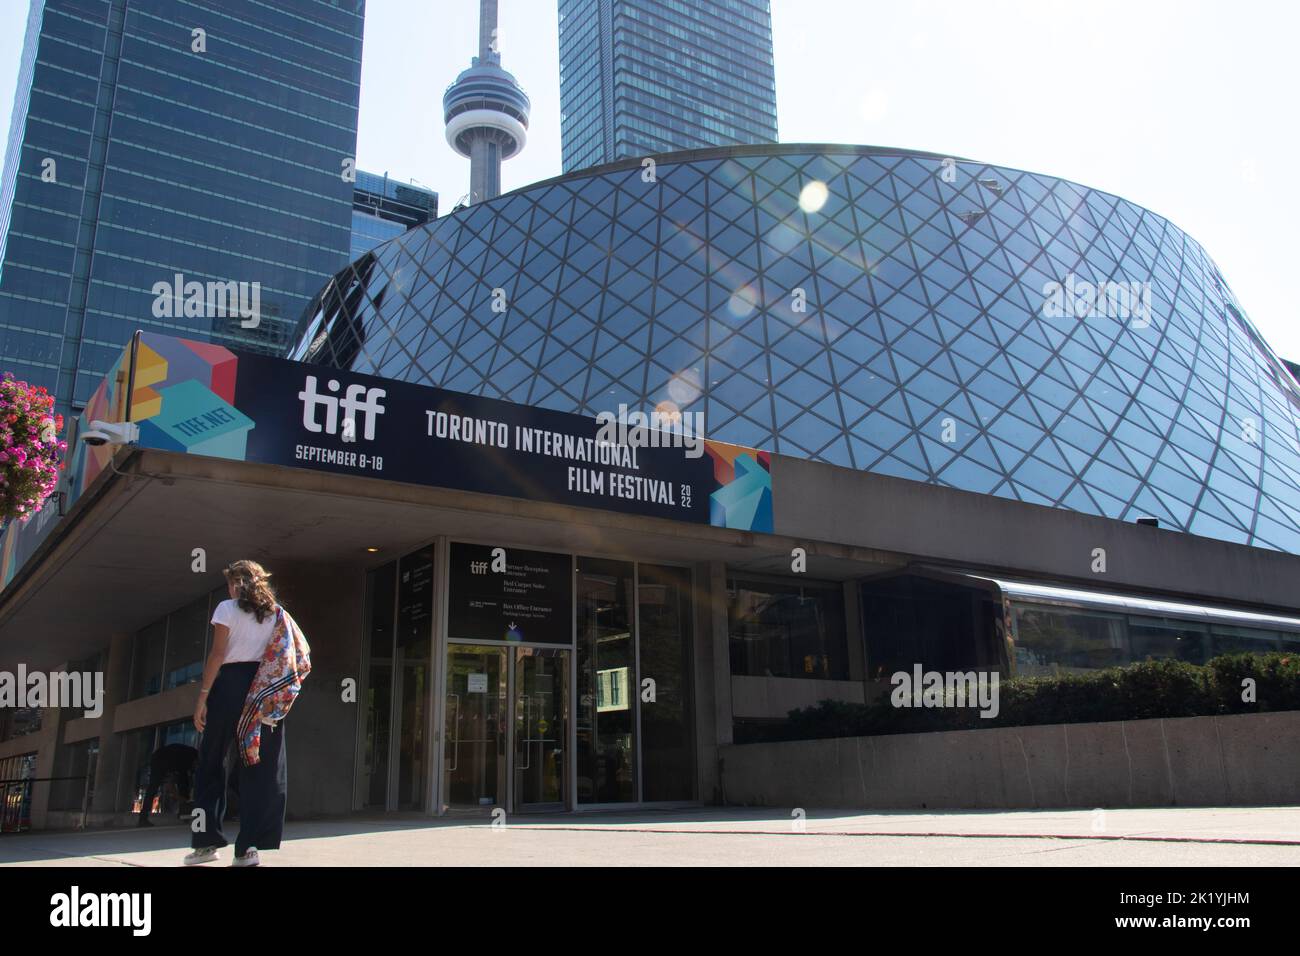 Le soleil brille sur le Roy Thomson Hall pendant le festival annuel du film TIFF; le TIFF est un festival de film international populaire organisé à Toronto. Banque D'Images